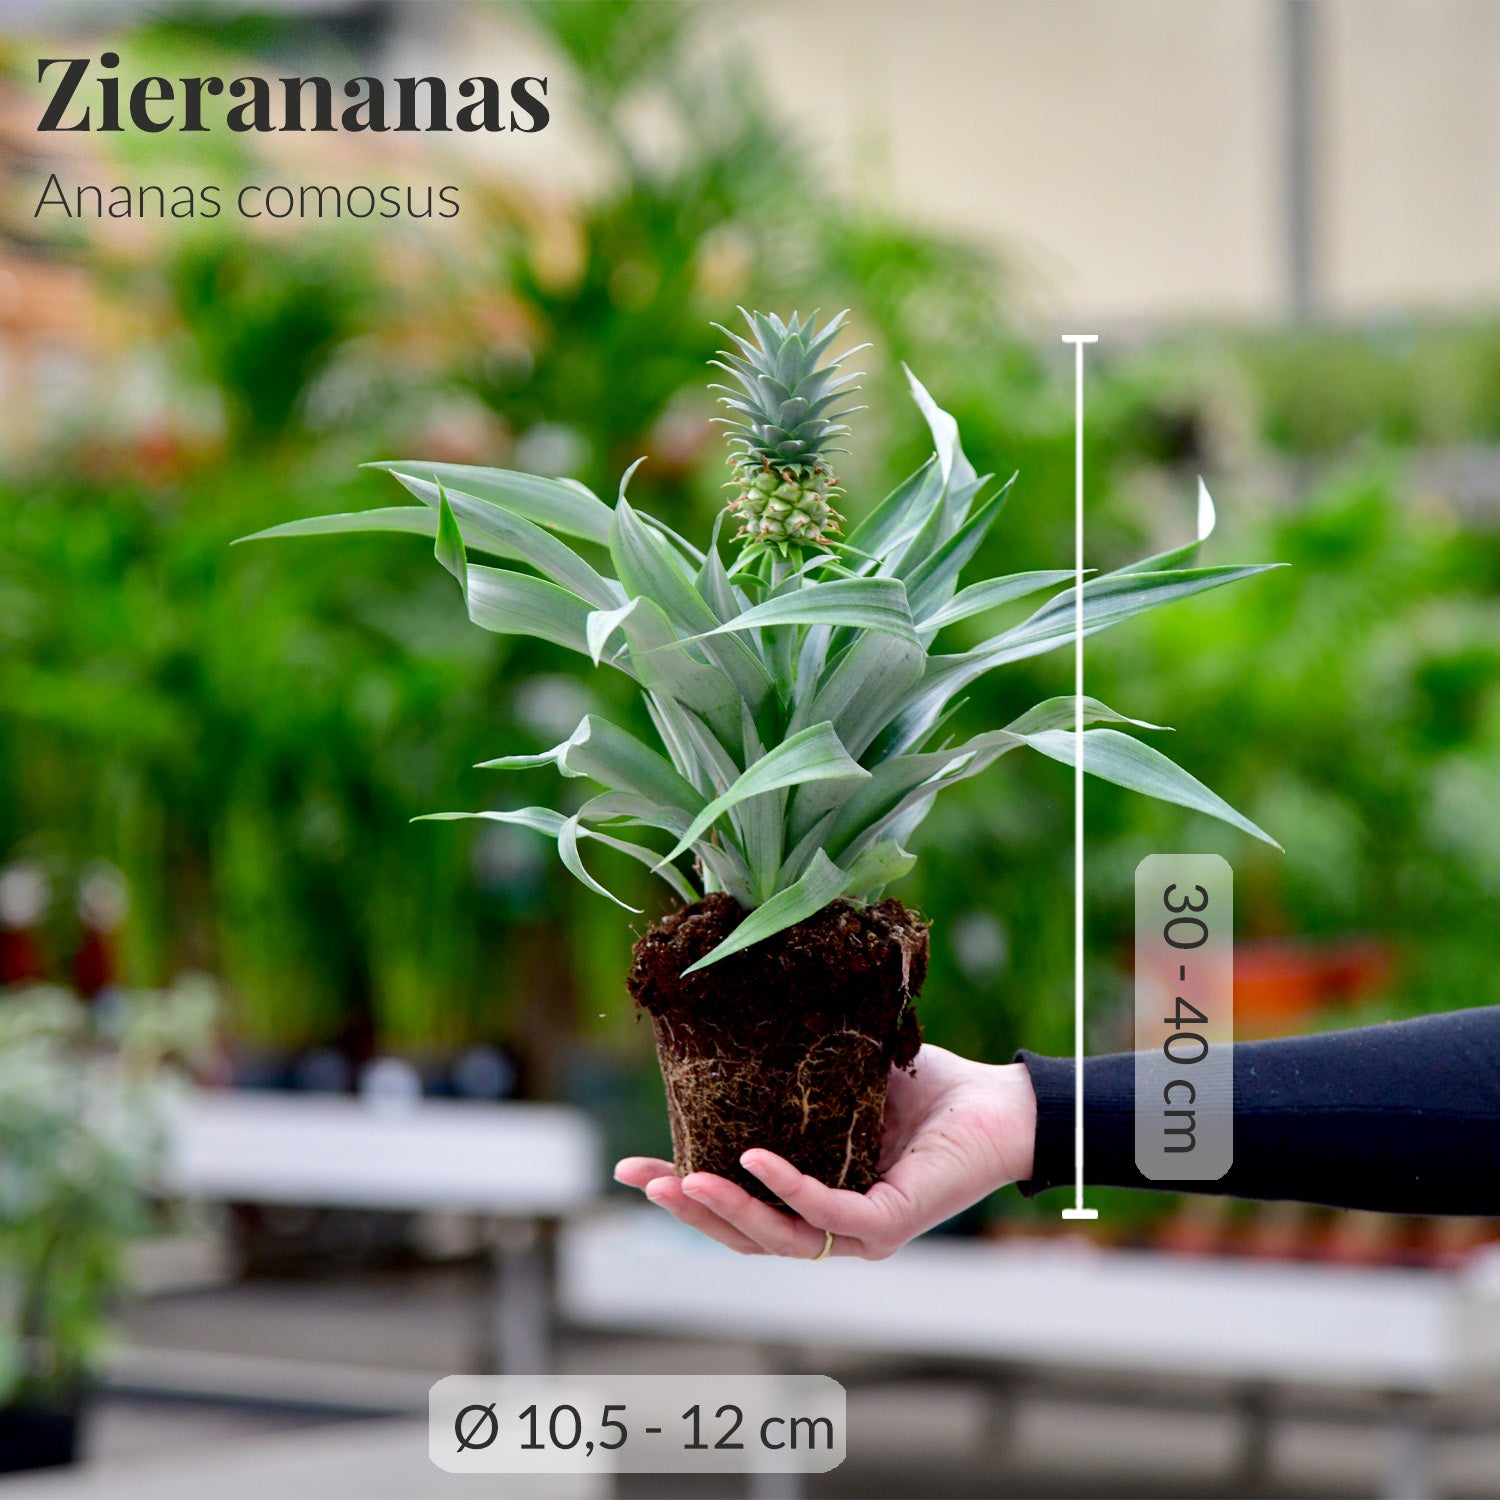 Zierananas/Ananas mit Maßangaben frisch vom Gärtner